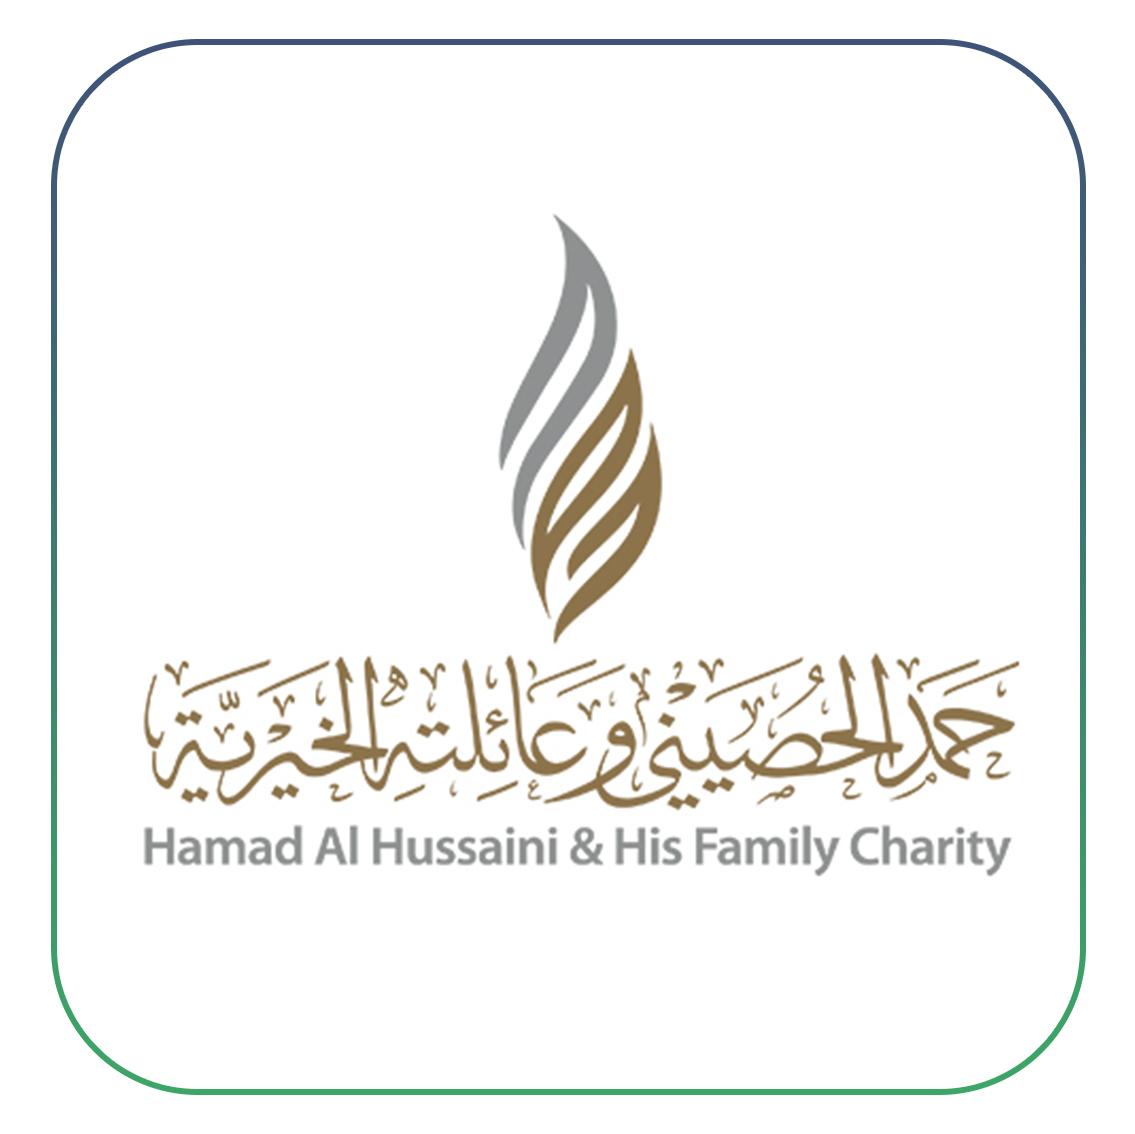 مؤسسة حمد الحصيني وعائلته الخيرية